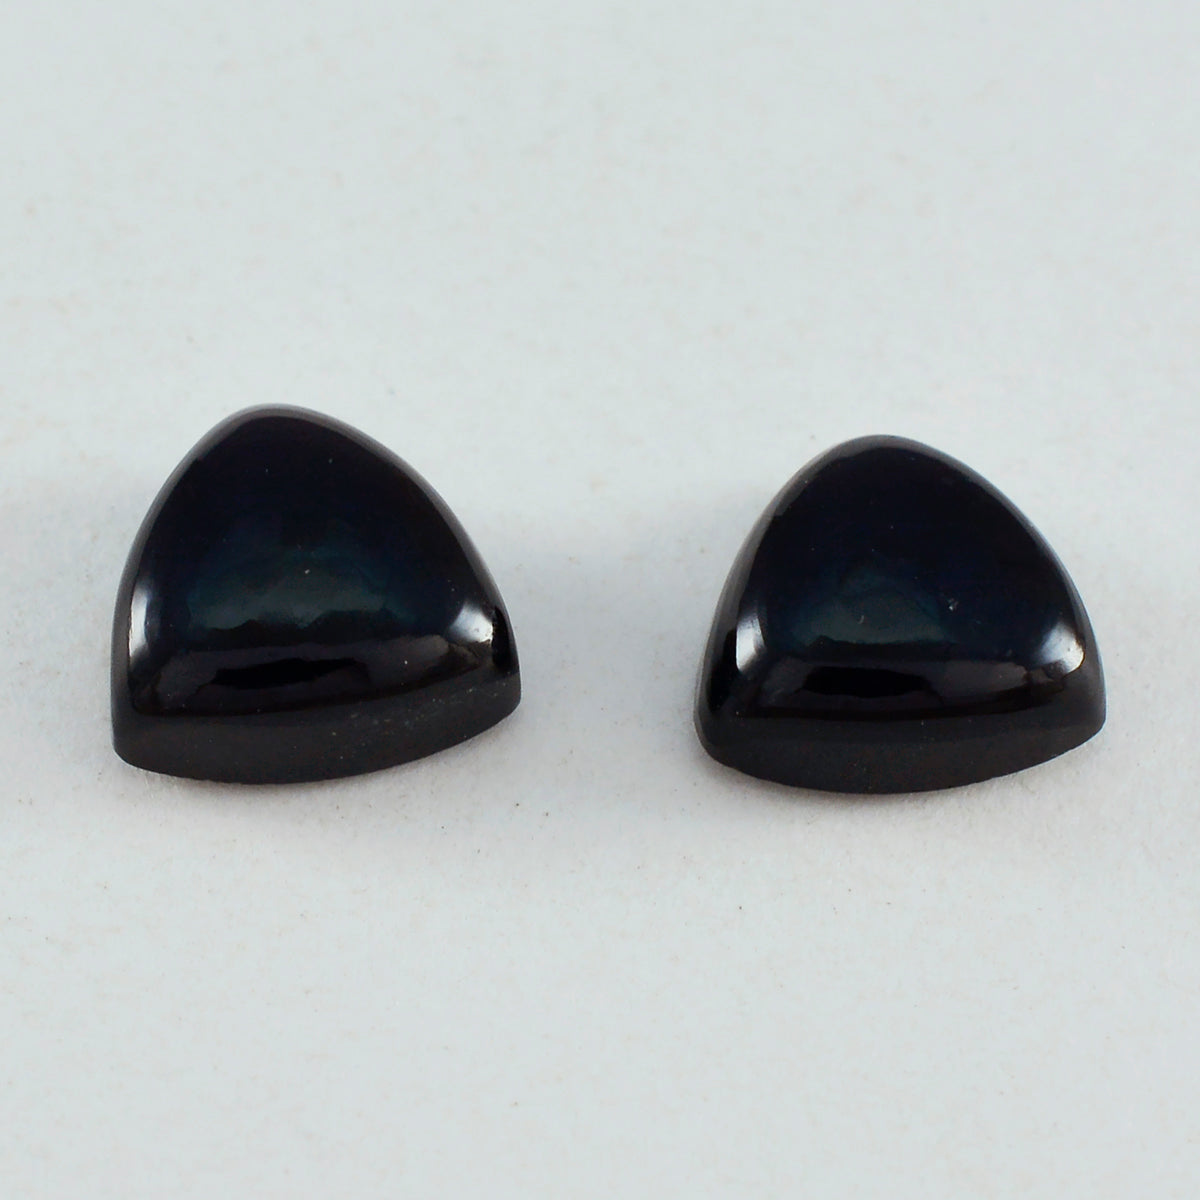 Riyogems 1 Stück schwarzer Onyx-Cabochon, 13 x 13 mm, Trillionenform, schöner, hochwertiger loser Stein